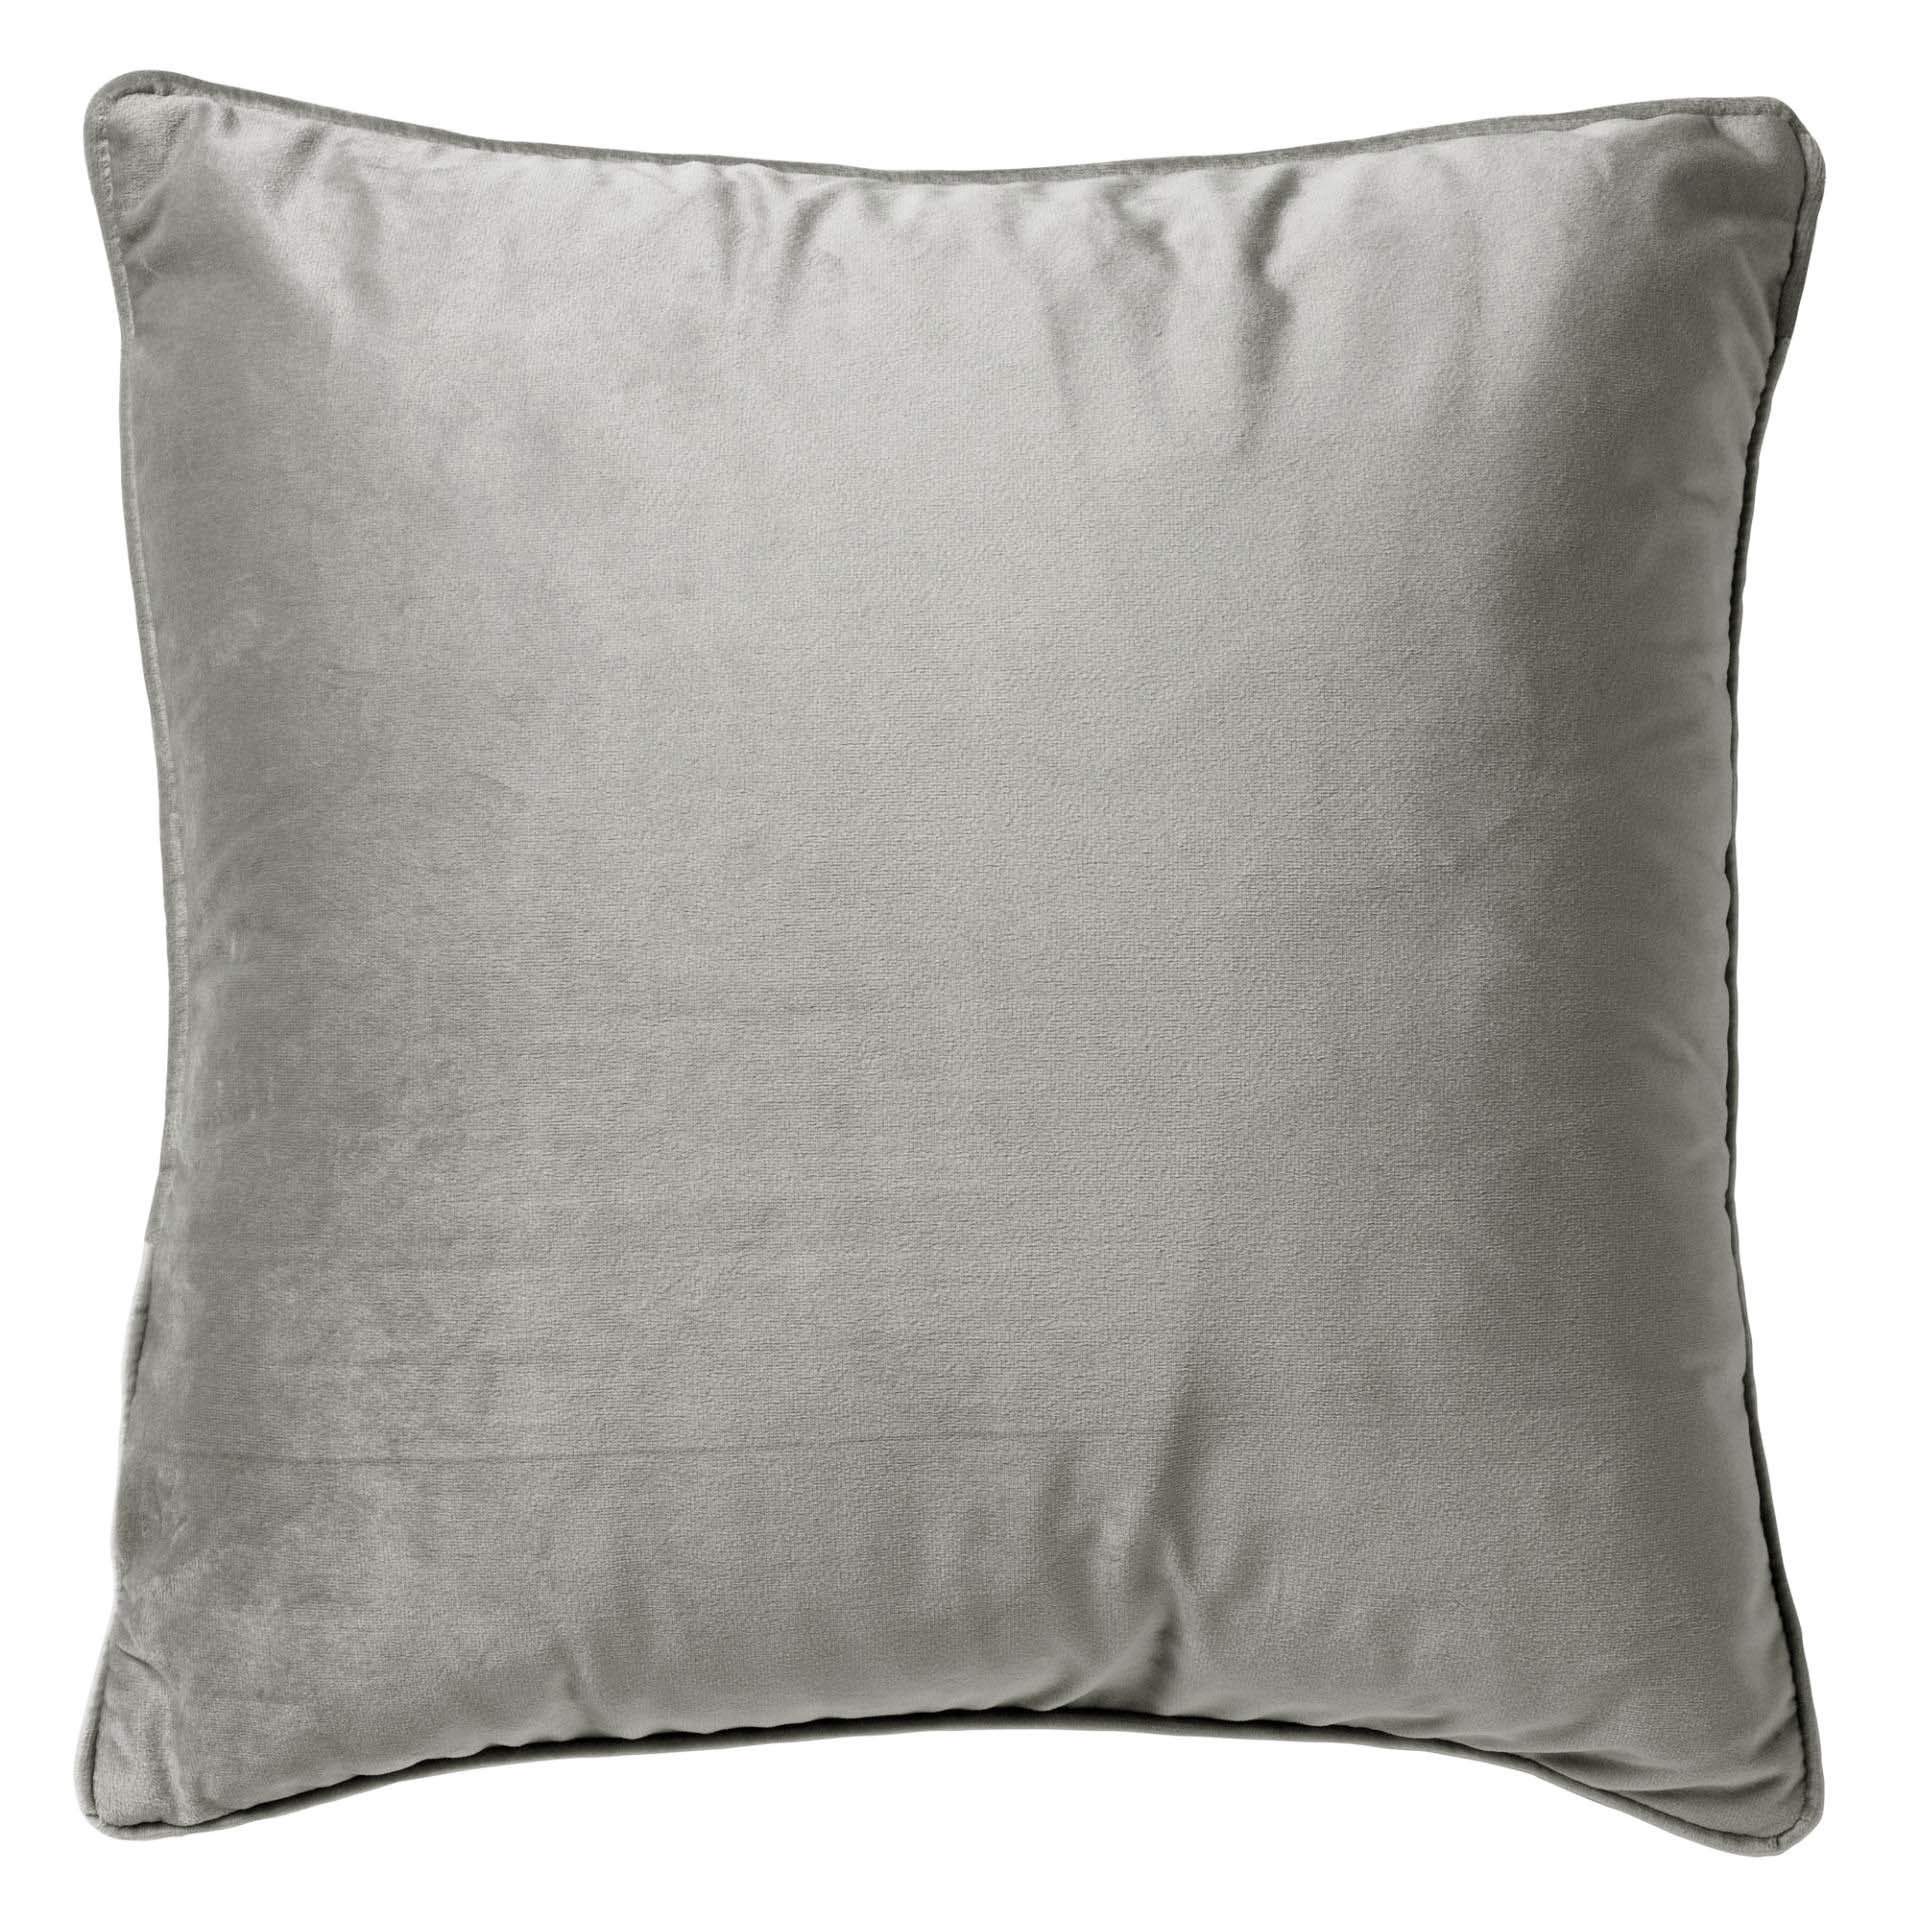 FINN - Cushion 60x60 cm Micro Chip - grey